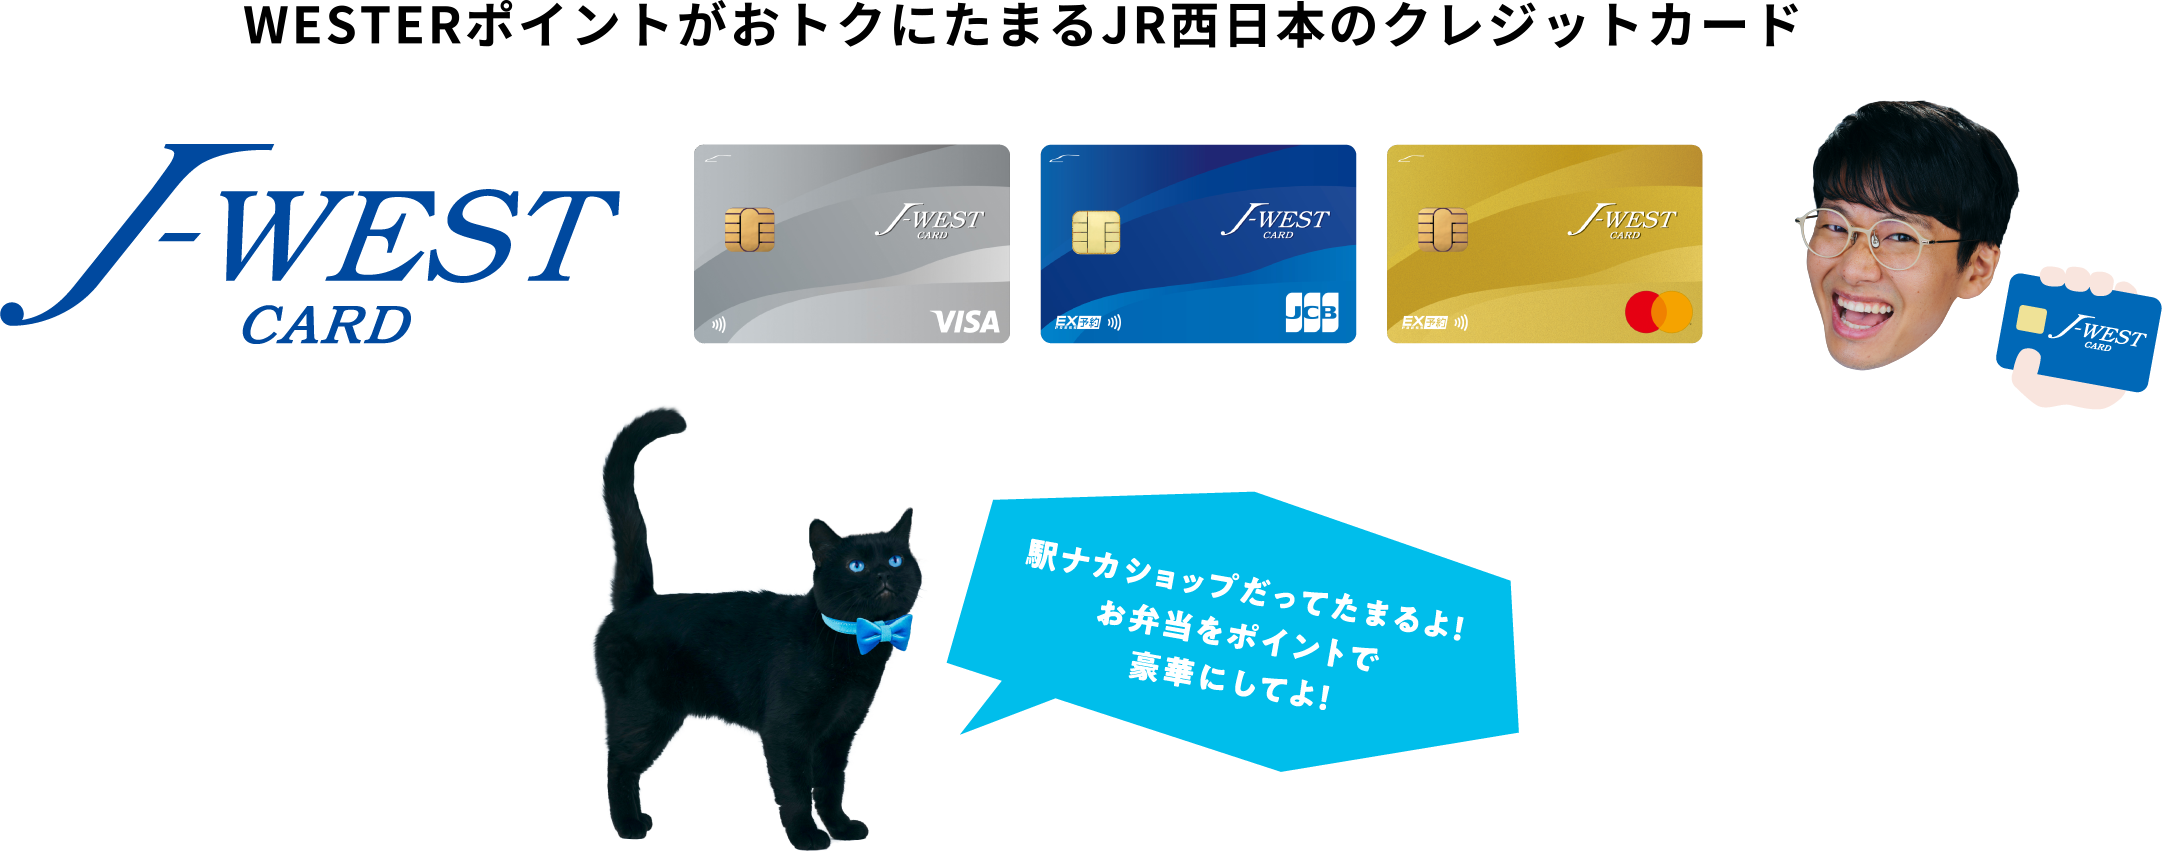 WESTERポイントがいちばんたまるJR西日本のクレジットカード